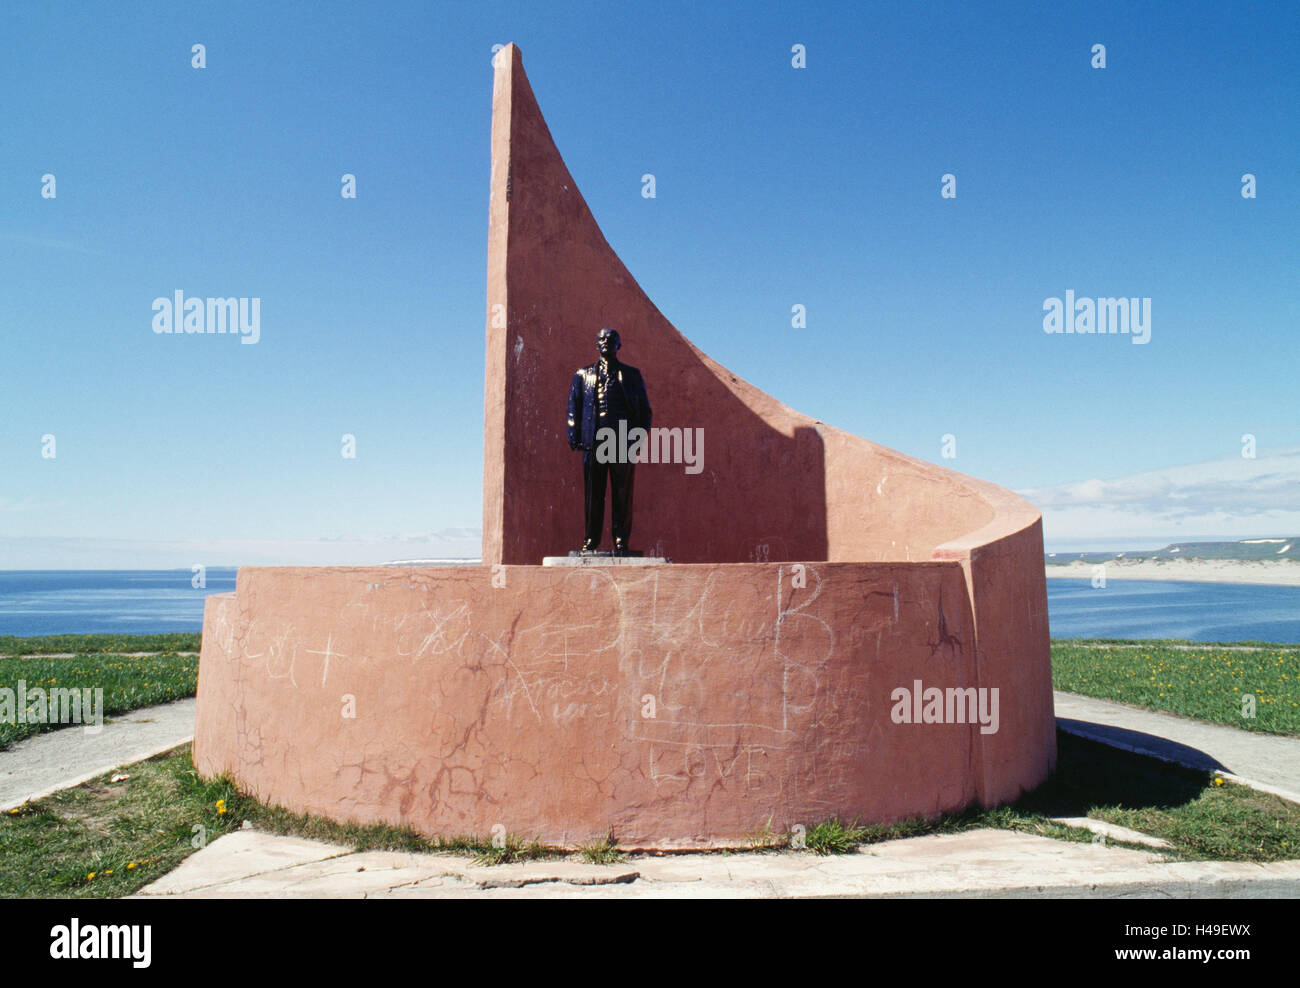 Rusia, comandante islas, la isla de Bering, estatua, Lenin. Foto de stock